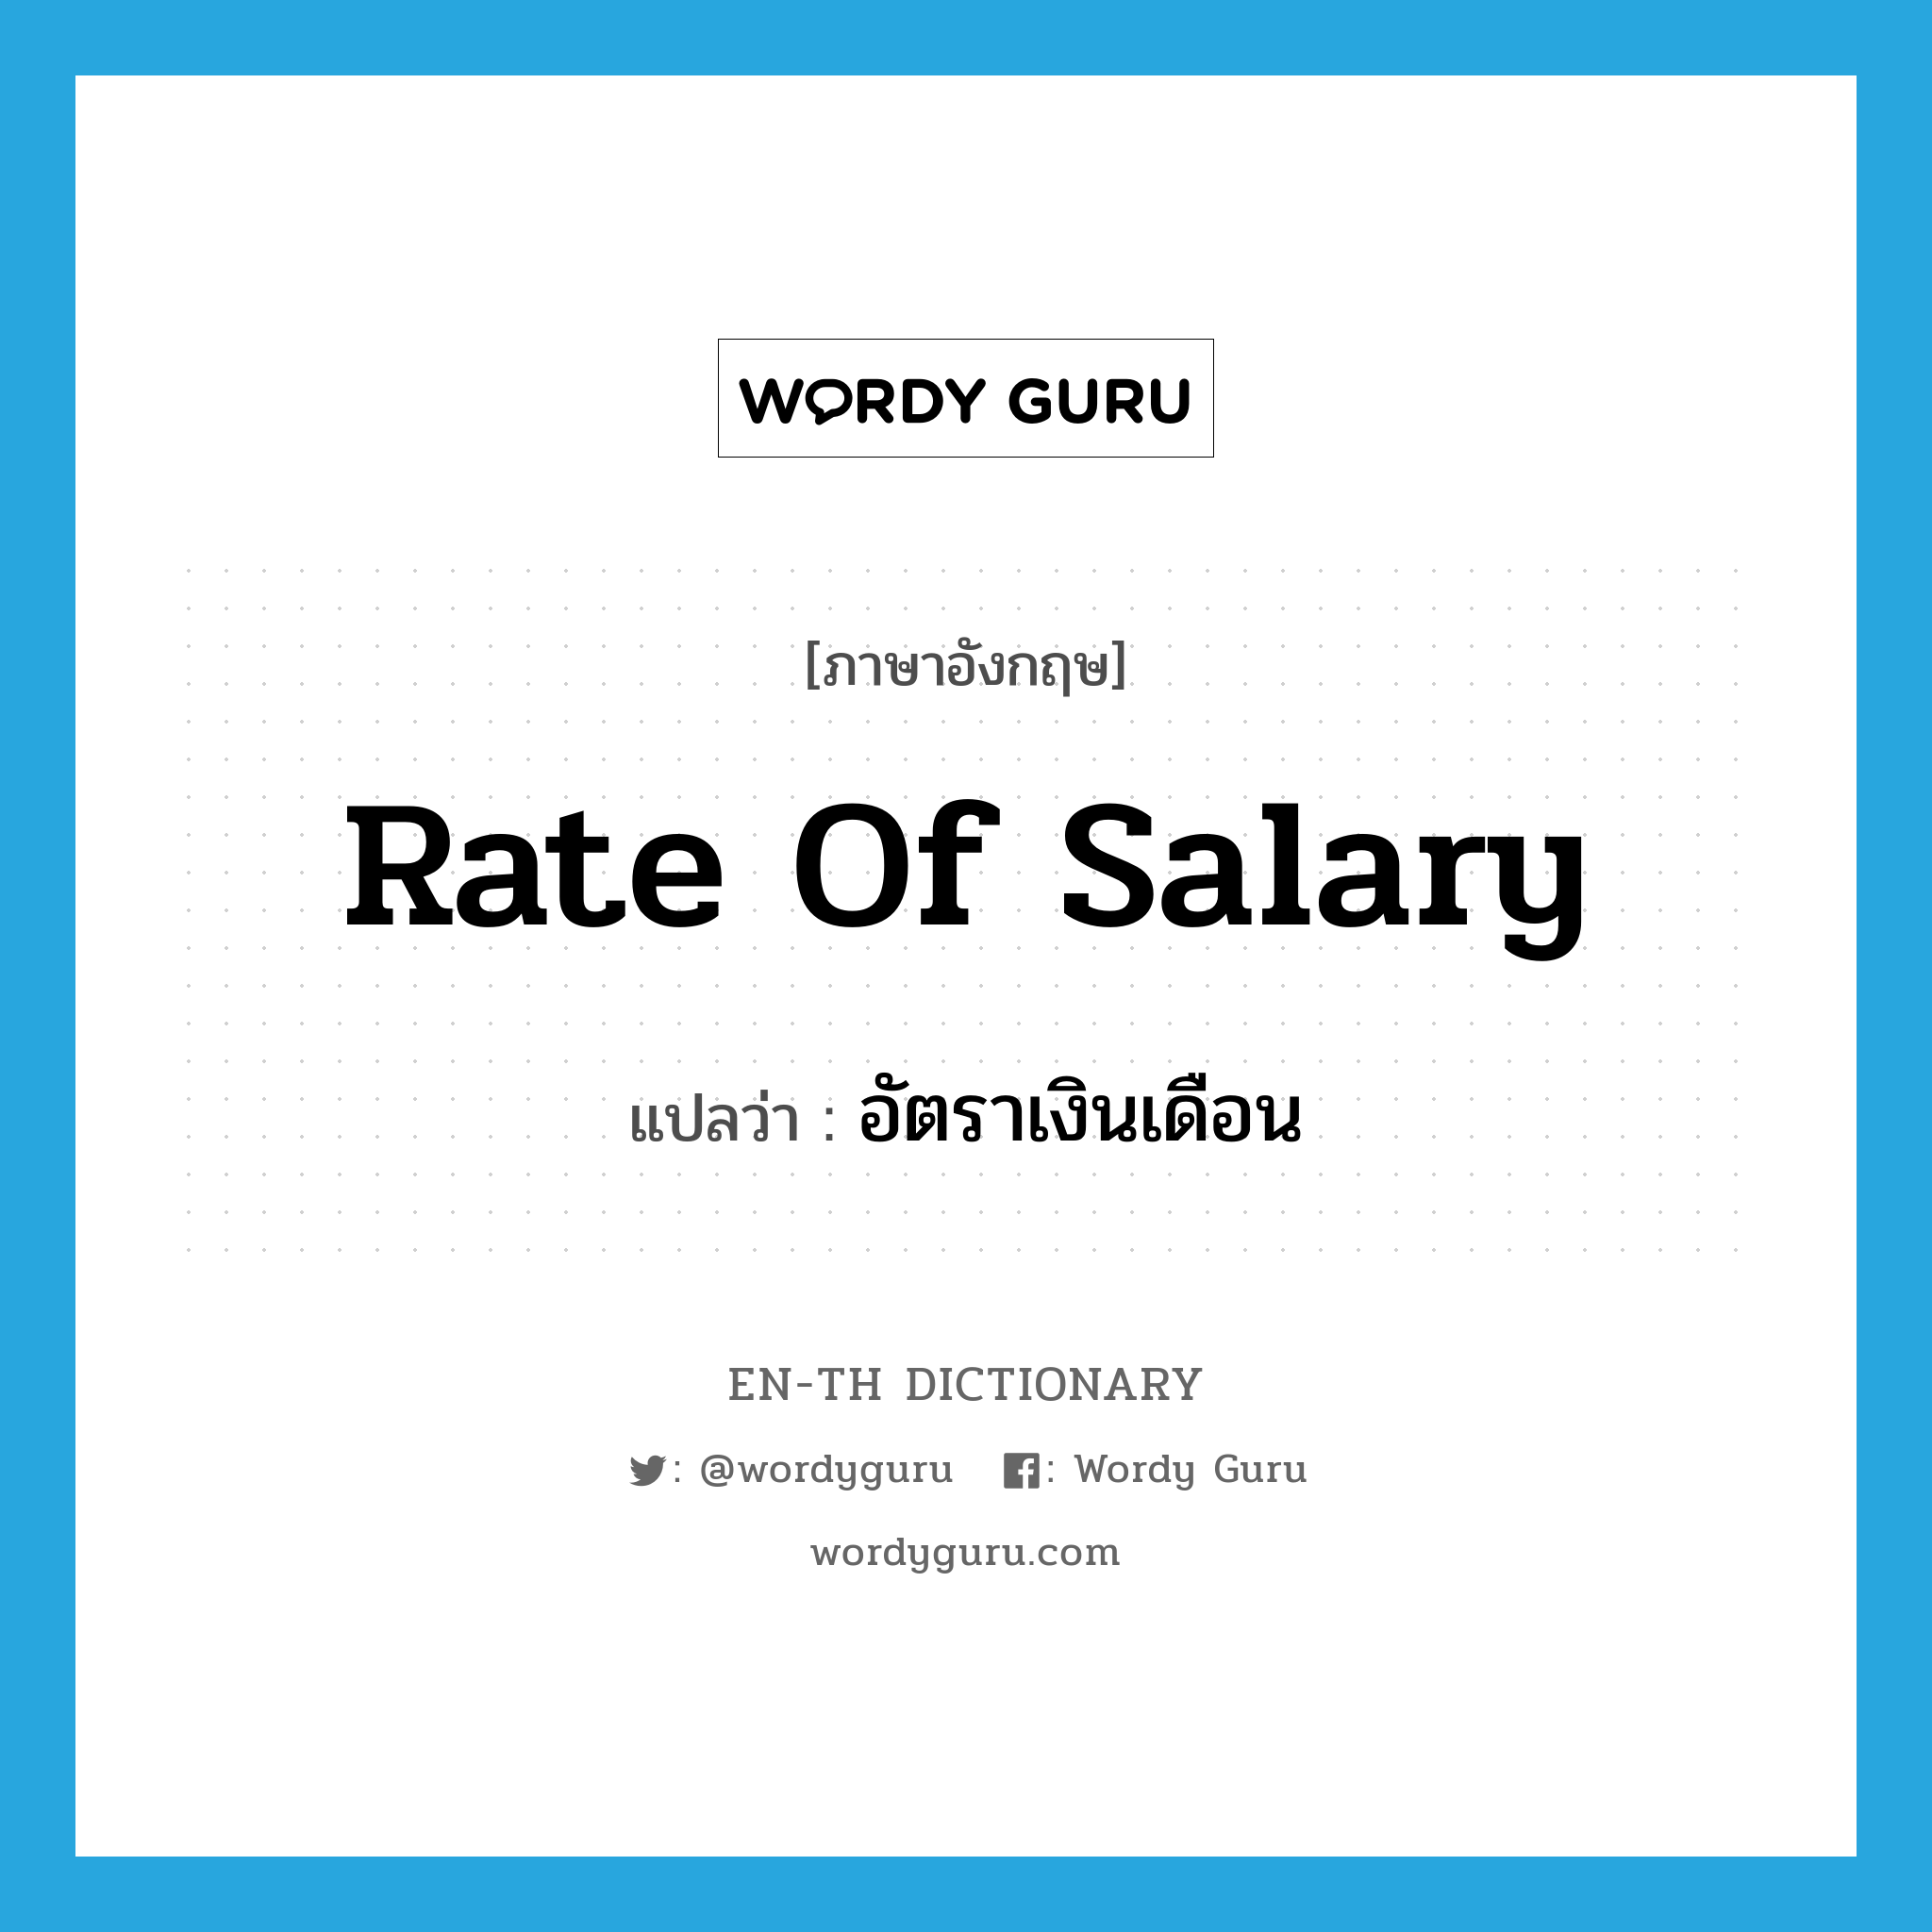 rate of salary แปลว่า?, คำศัพท์ภาษาอังกฤษ rate of salary แปลว่า อัตราเงินเดือน ประเภท N หมวด N